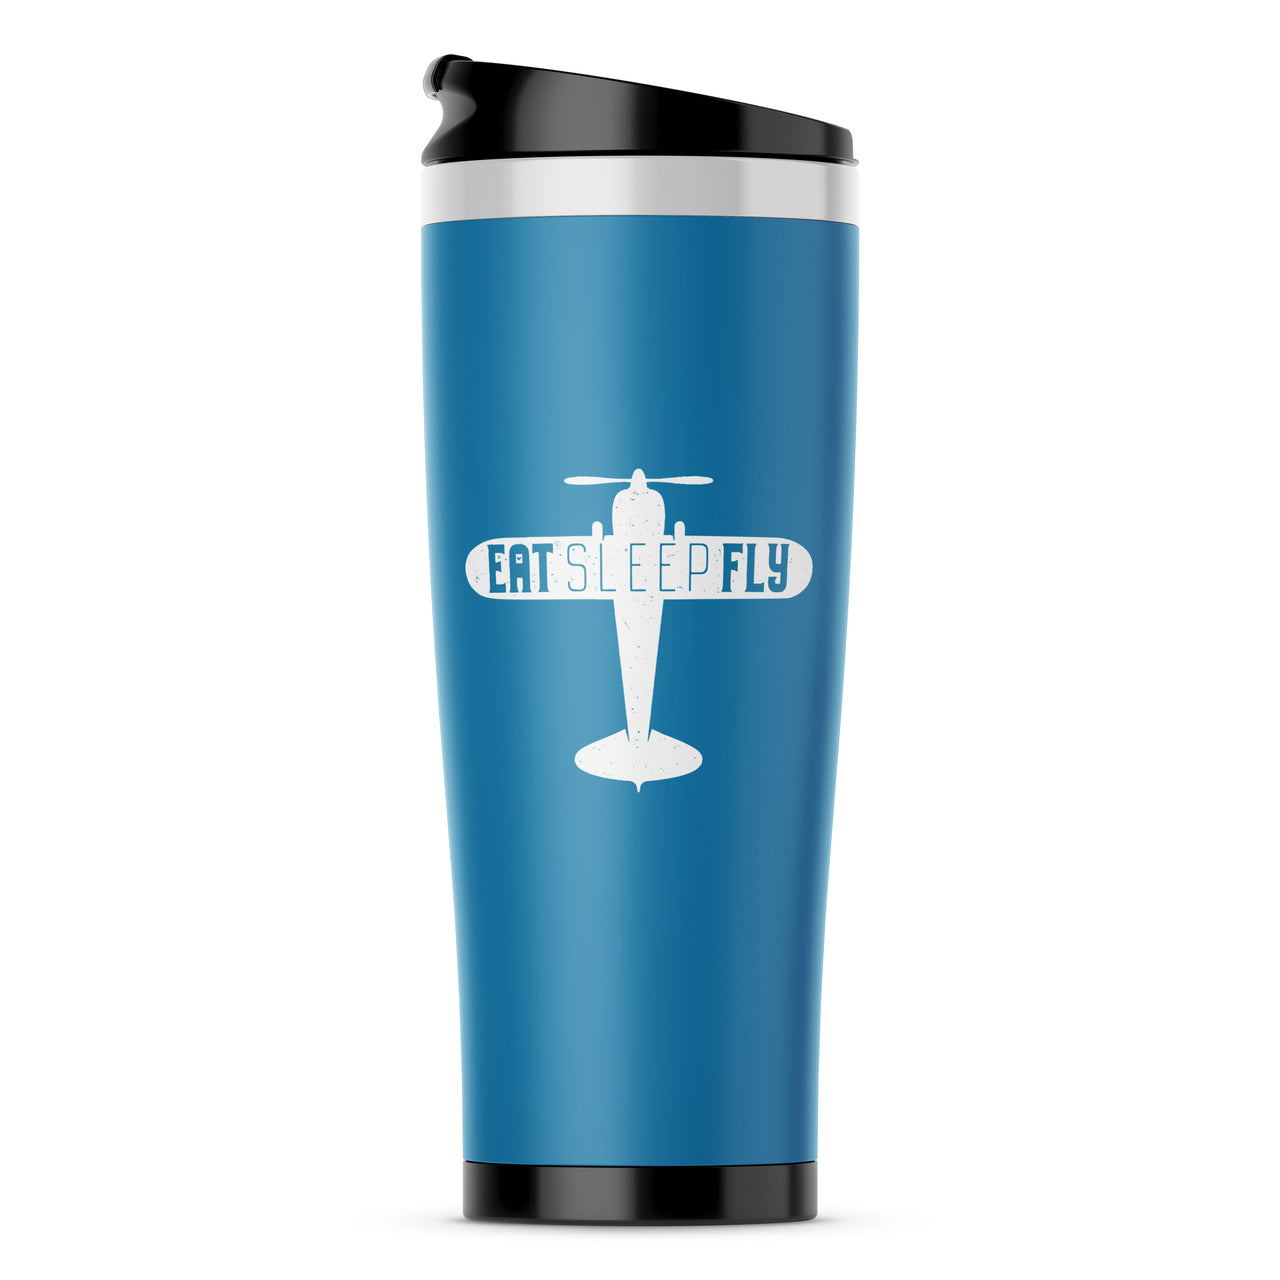 Eat Sleep Fly & Propeller Designed Travel Mugs